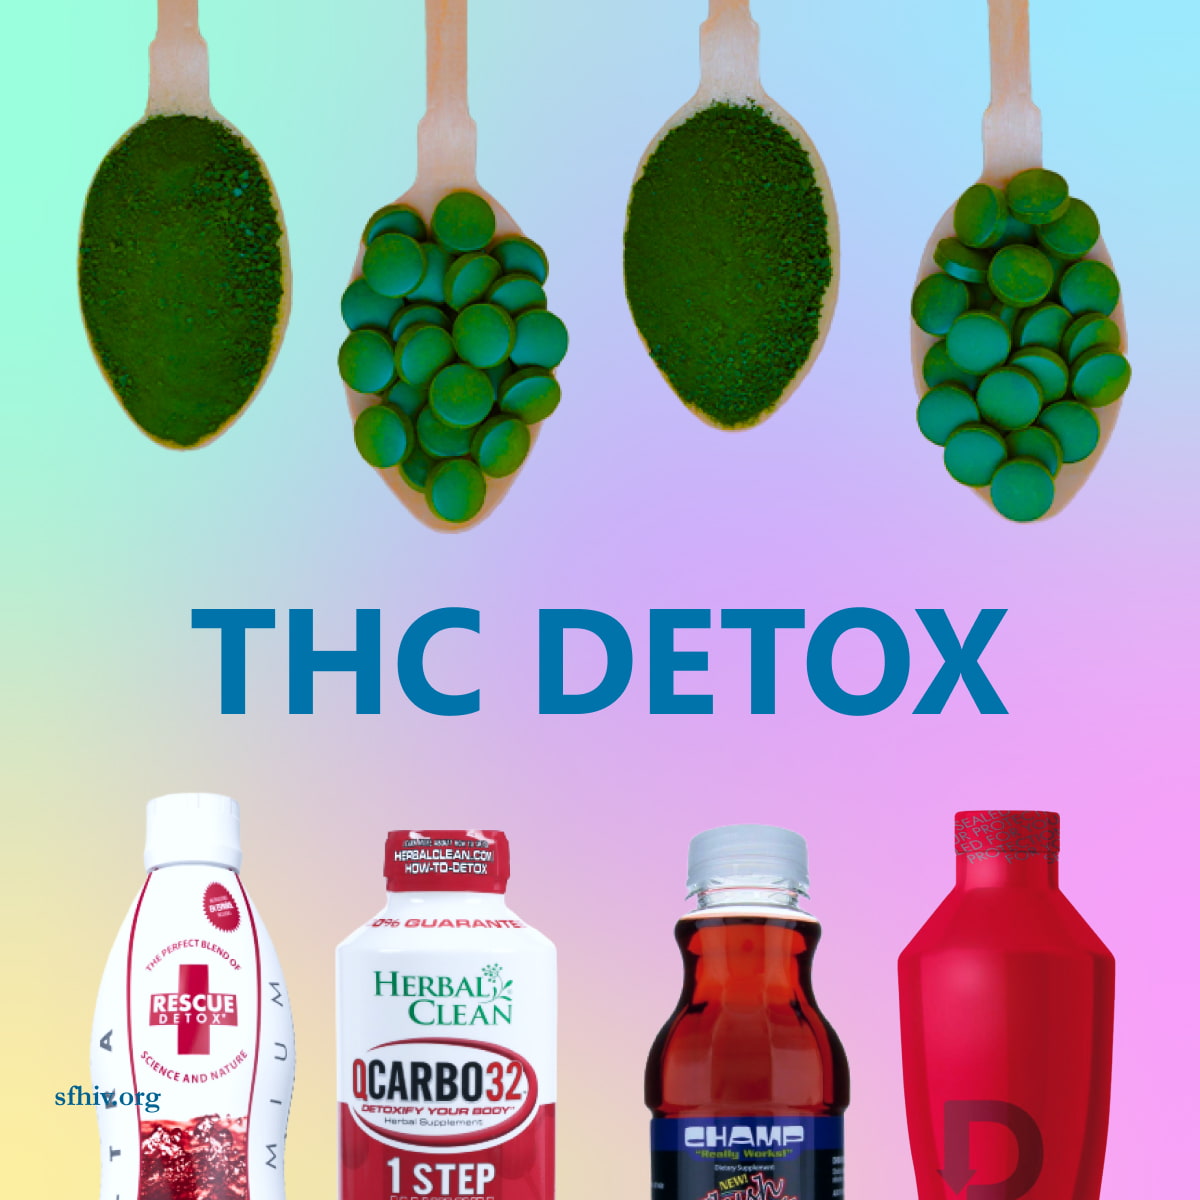 THC Detox